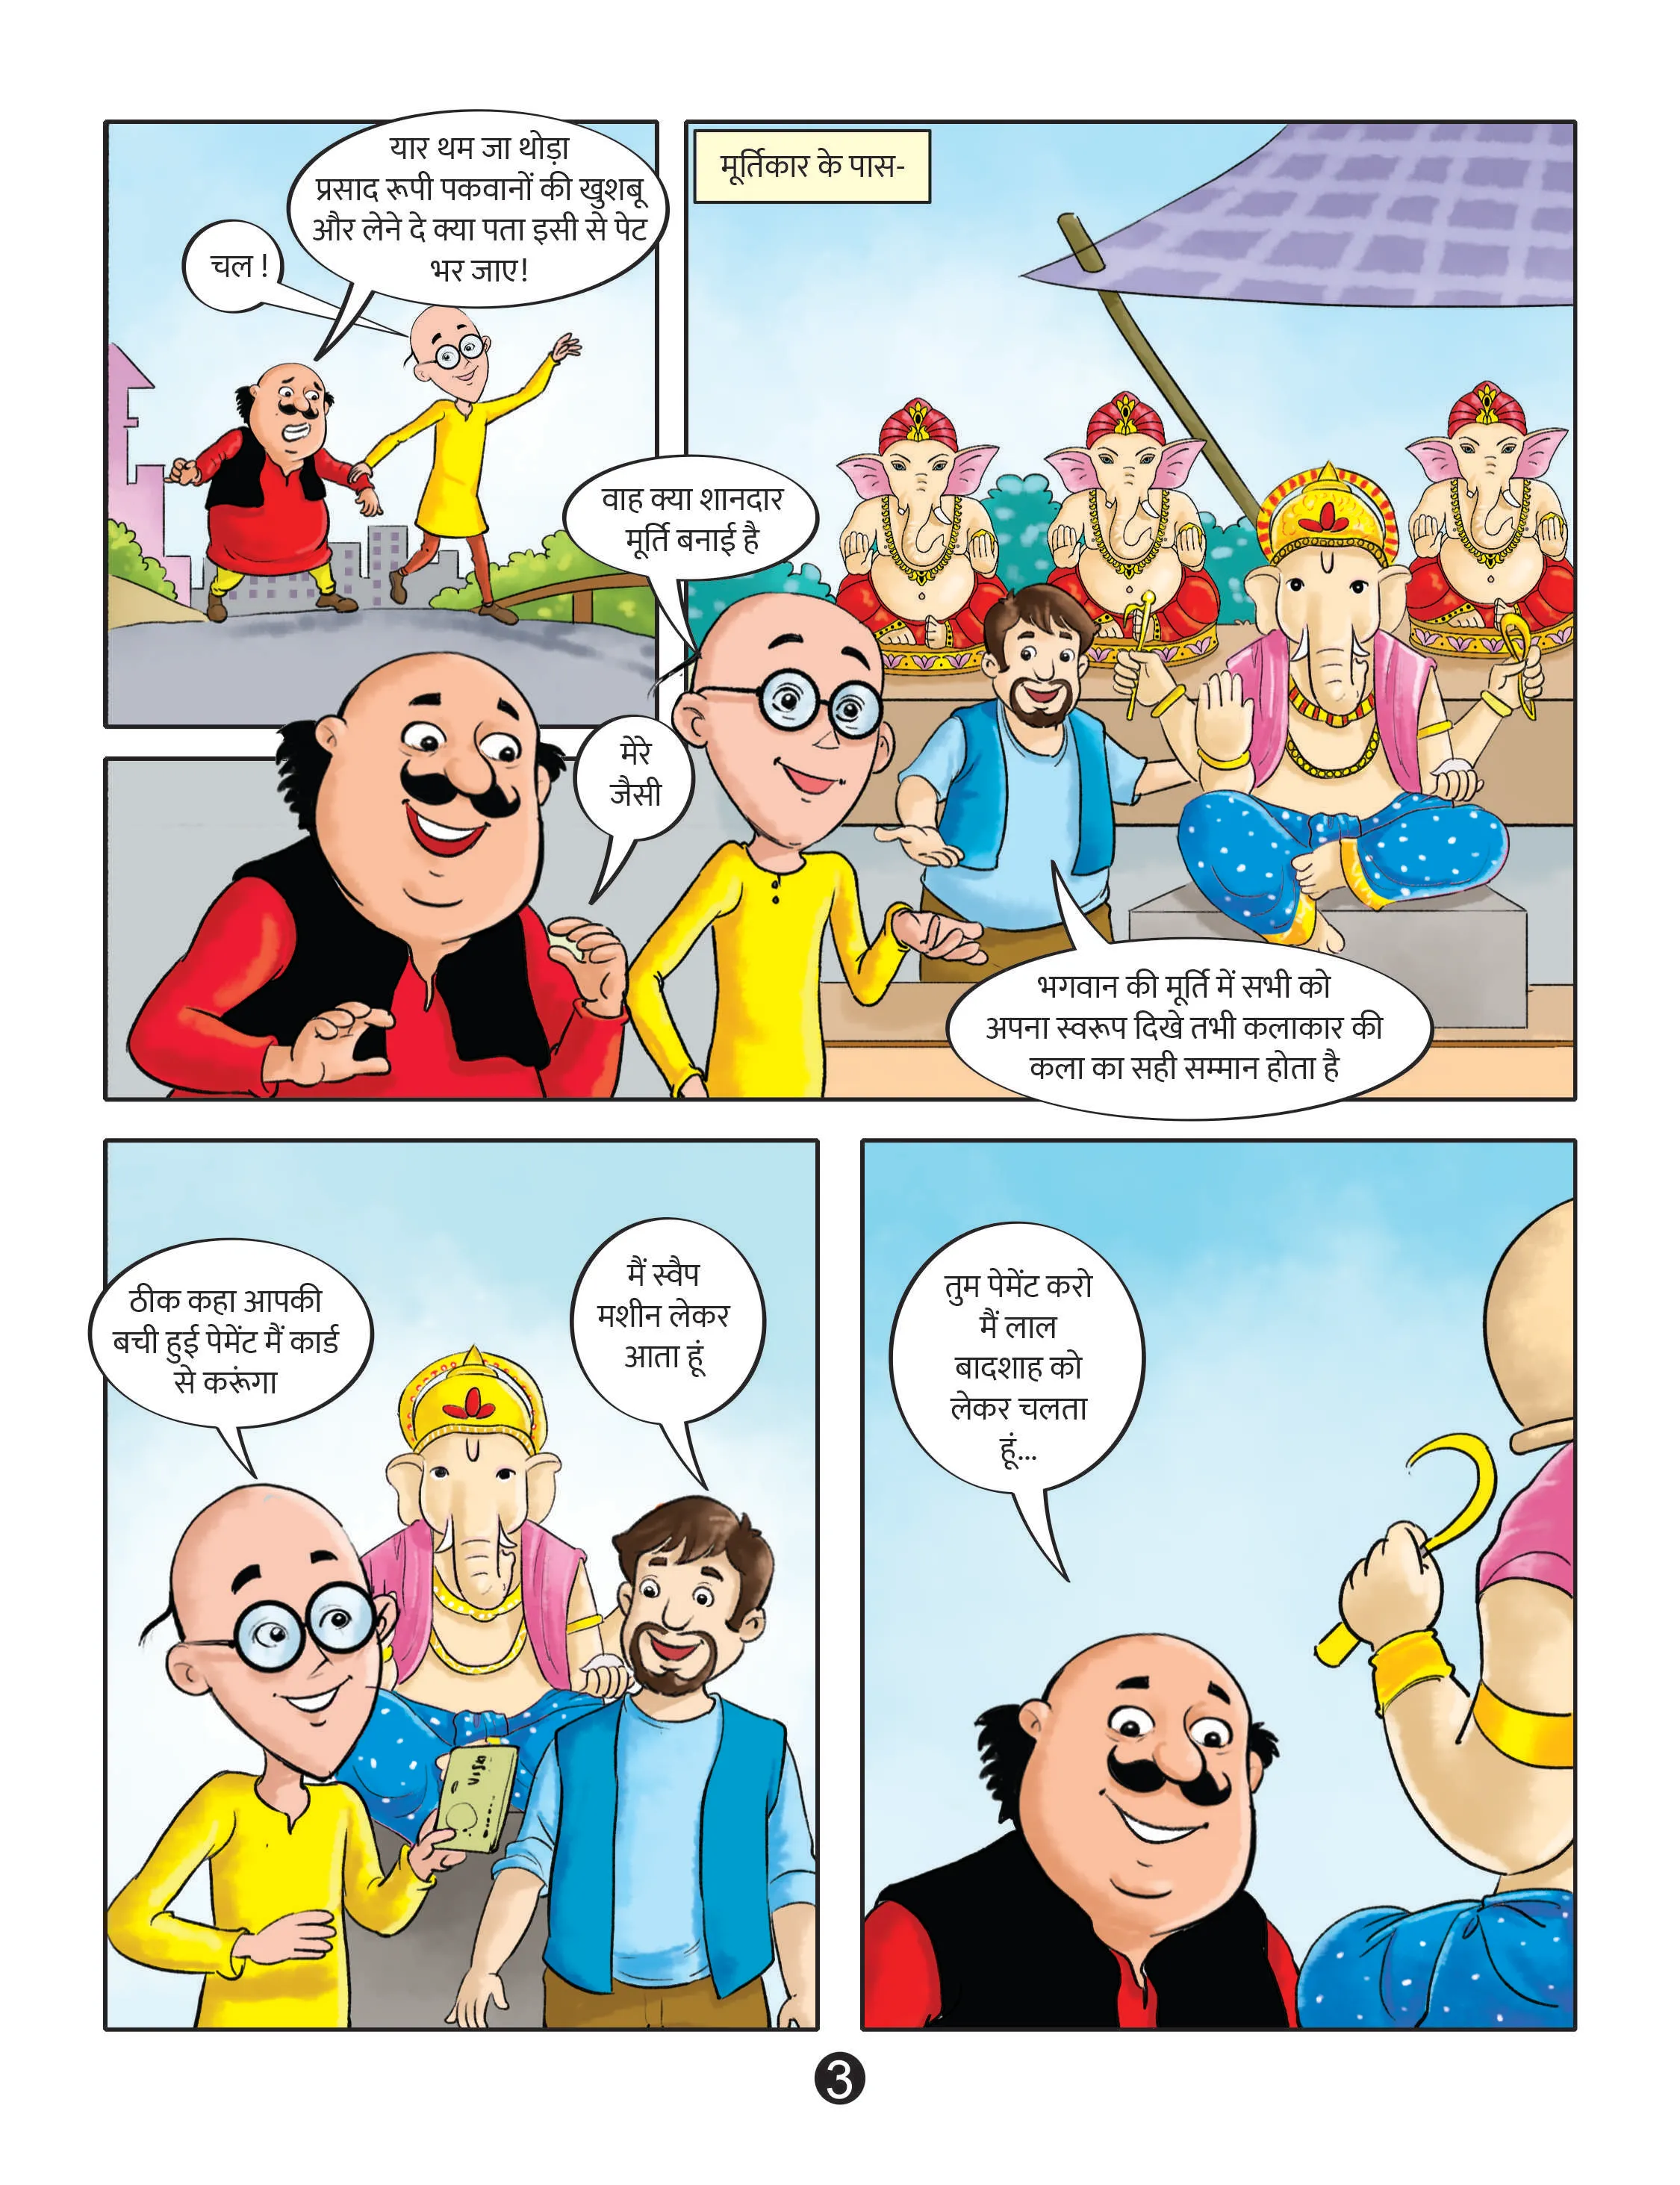 lotpot e-comics cartoon character motu patlu